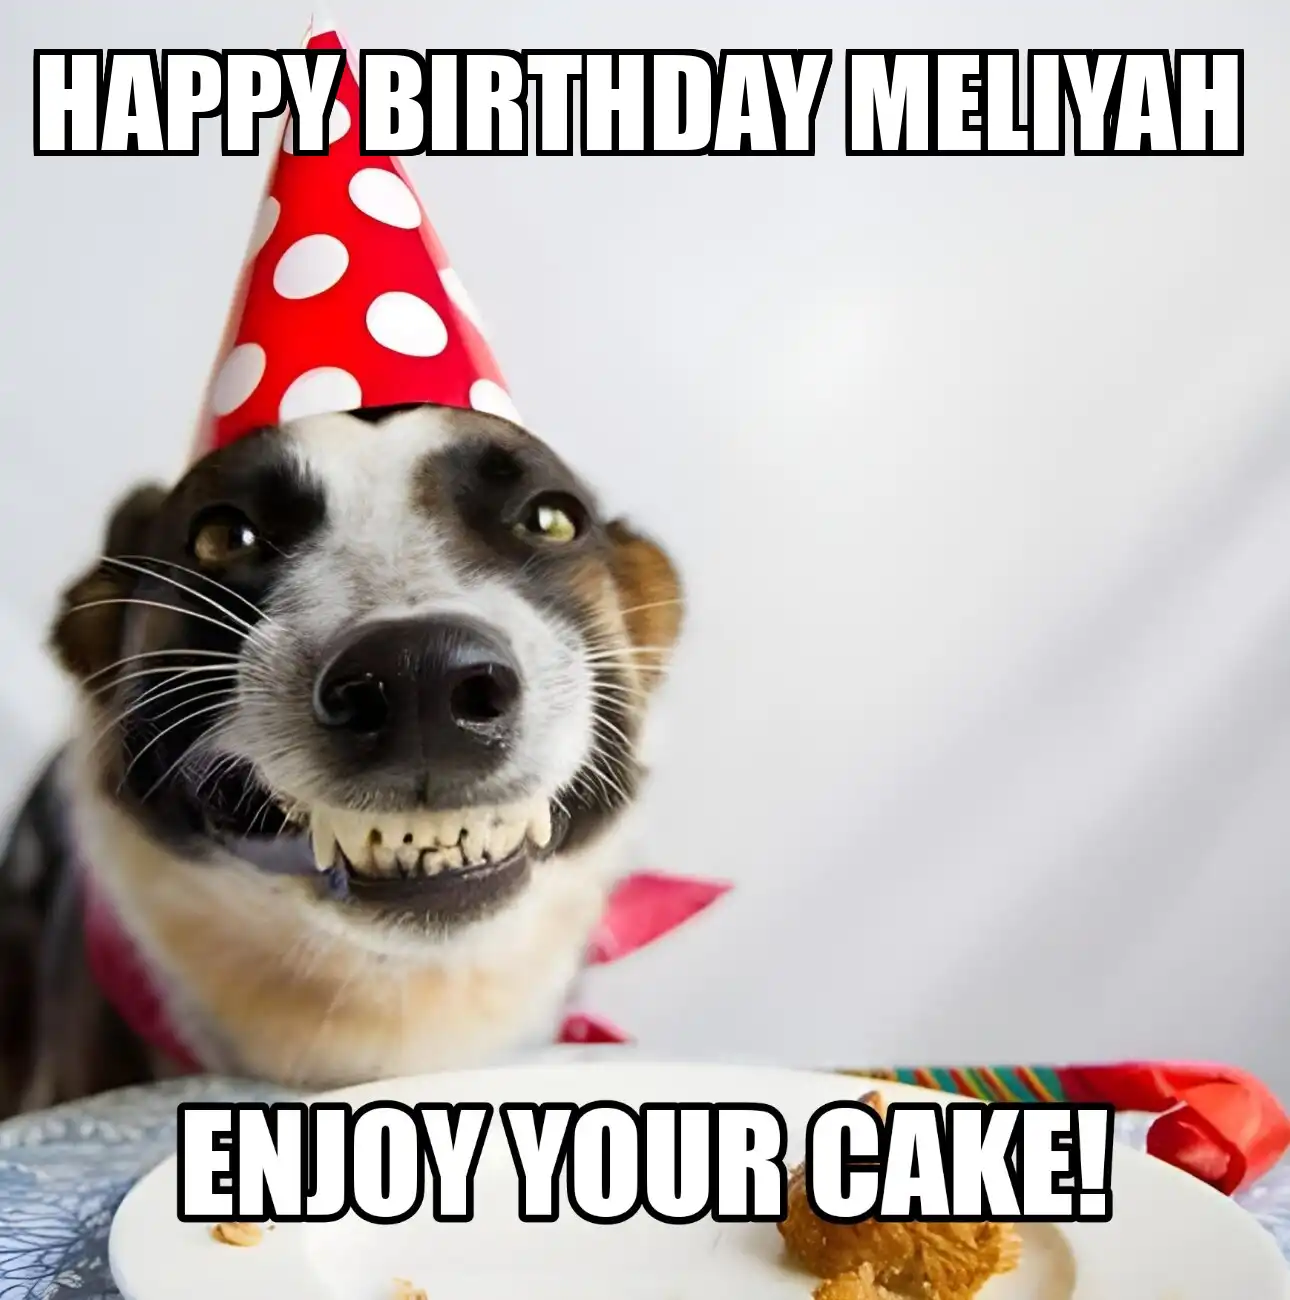 Happy Birthday Meliyah Enjoy Your Cake Dog Meme